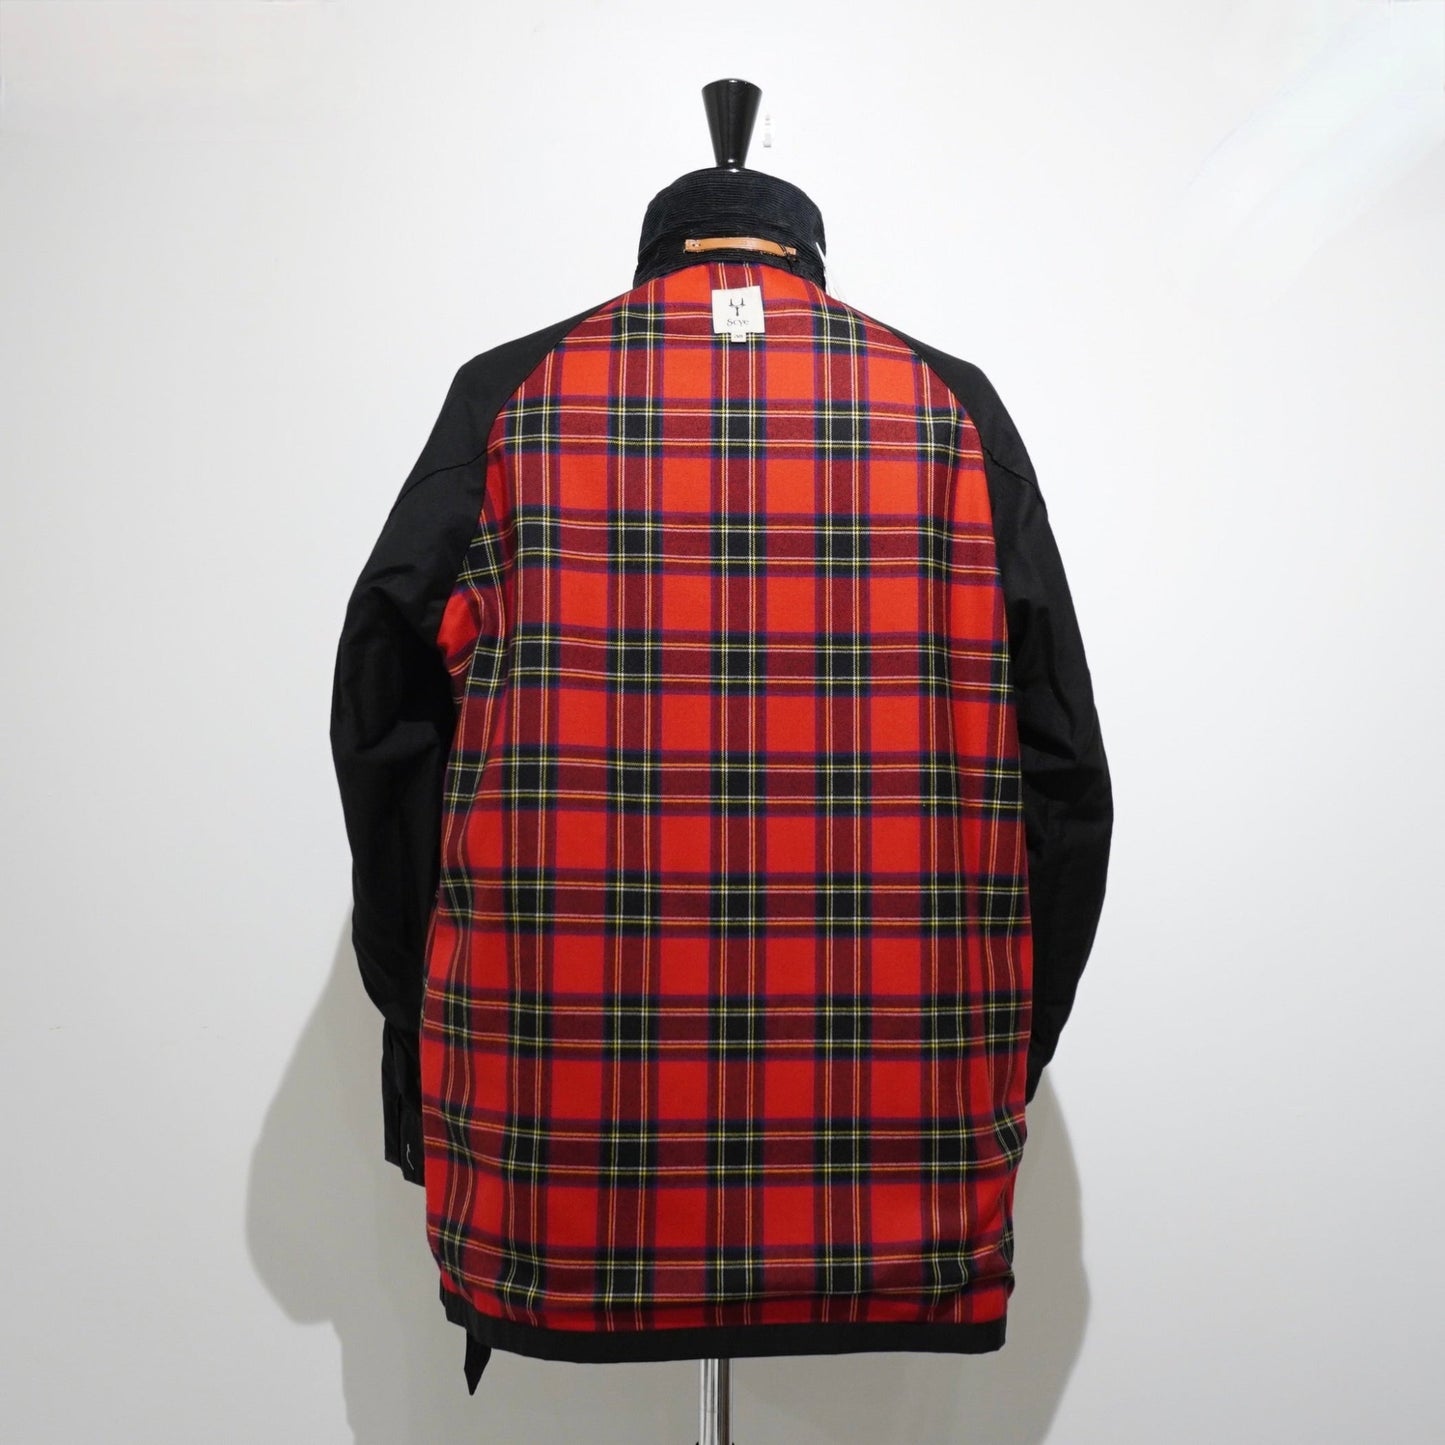 [Scye] Waxed Cotton Motorcycle Jacket ジャケット - #shop_name #アパルティール# #名古屋# #セレクトショップ#